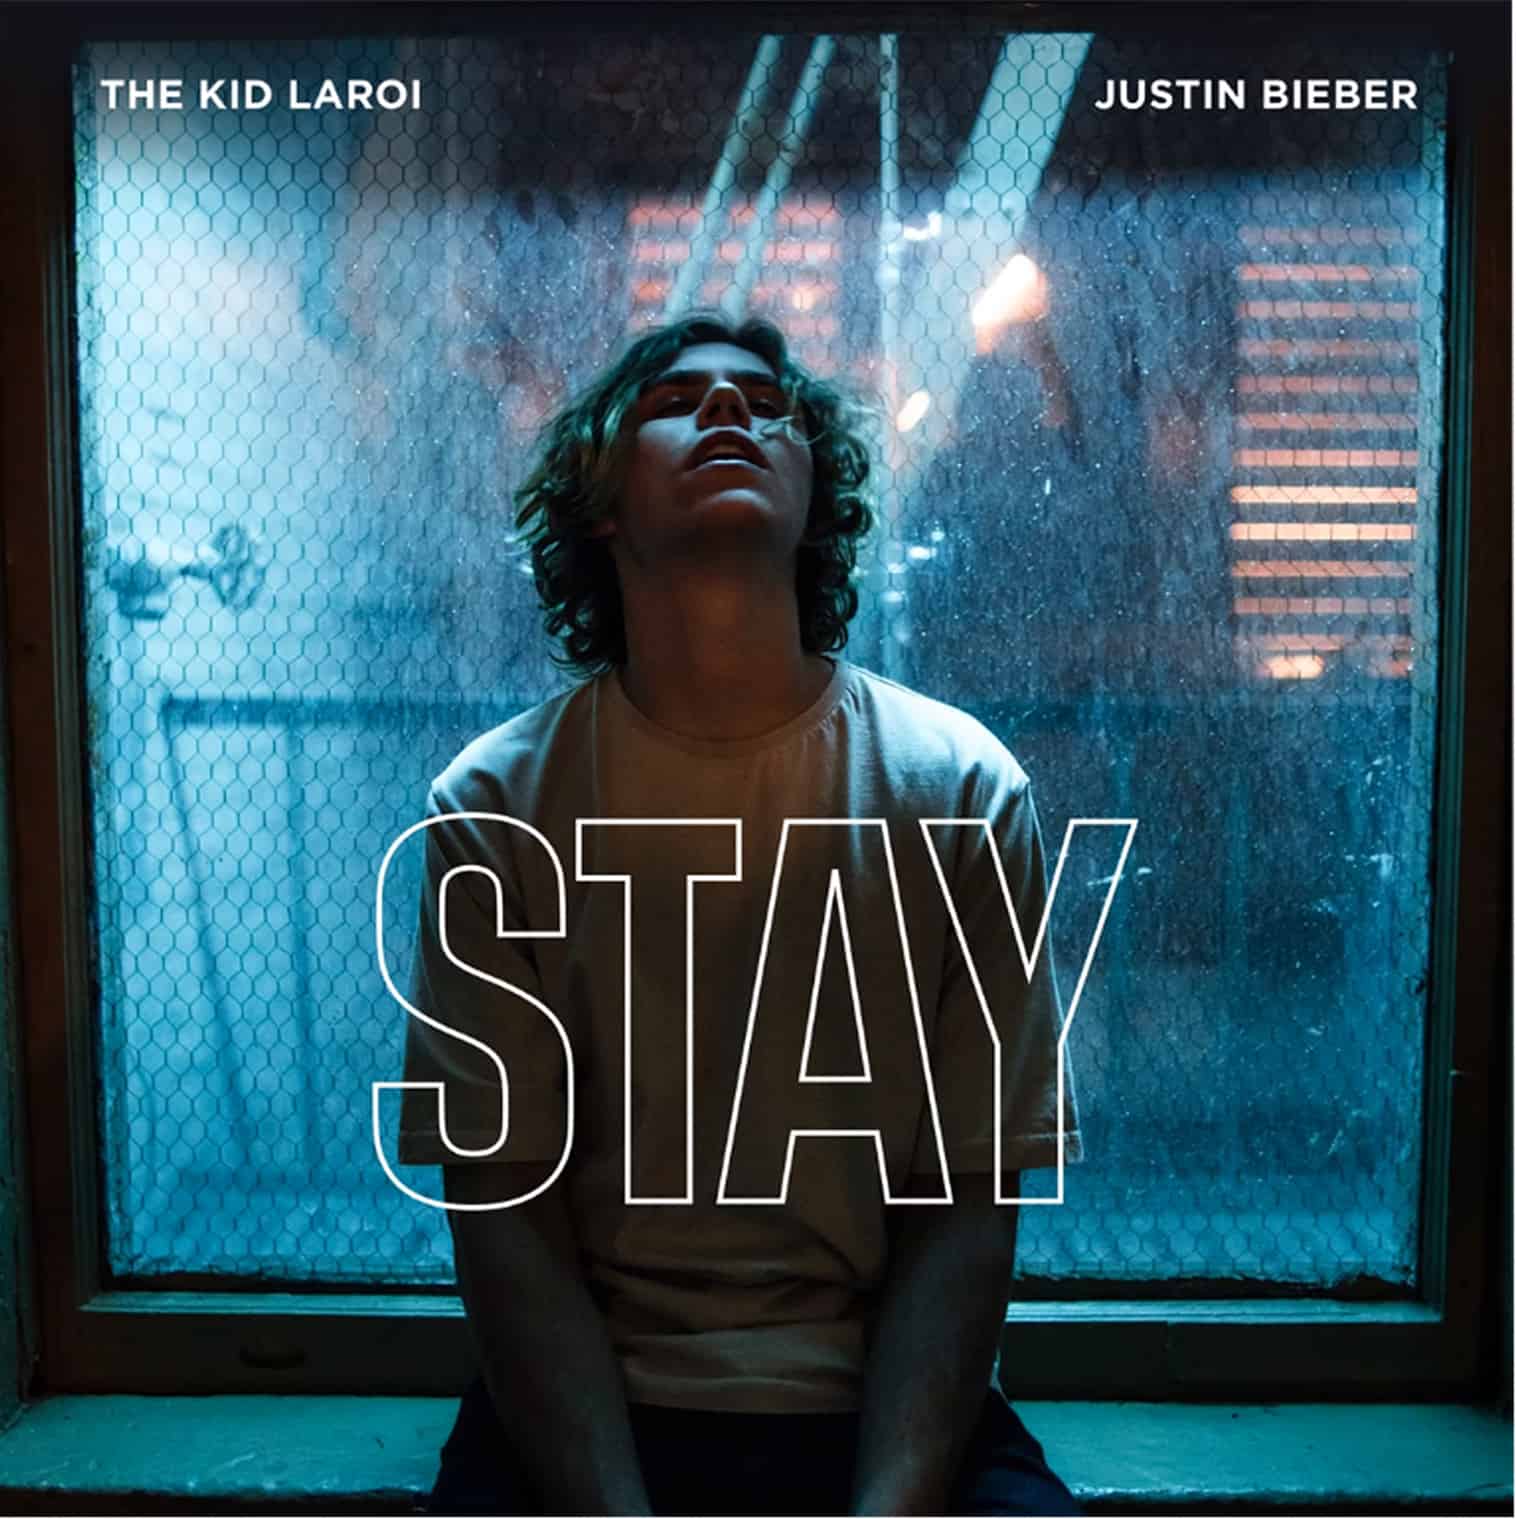 STAY - Justin Bieber, The Kid LAROI [FANART]